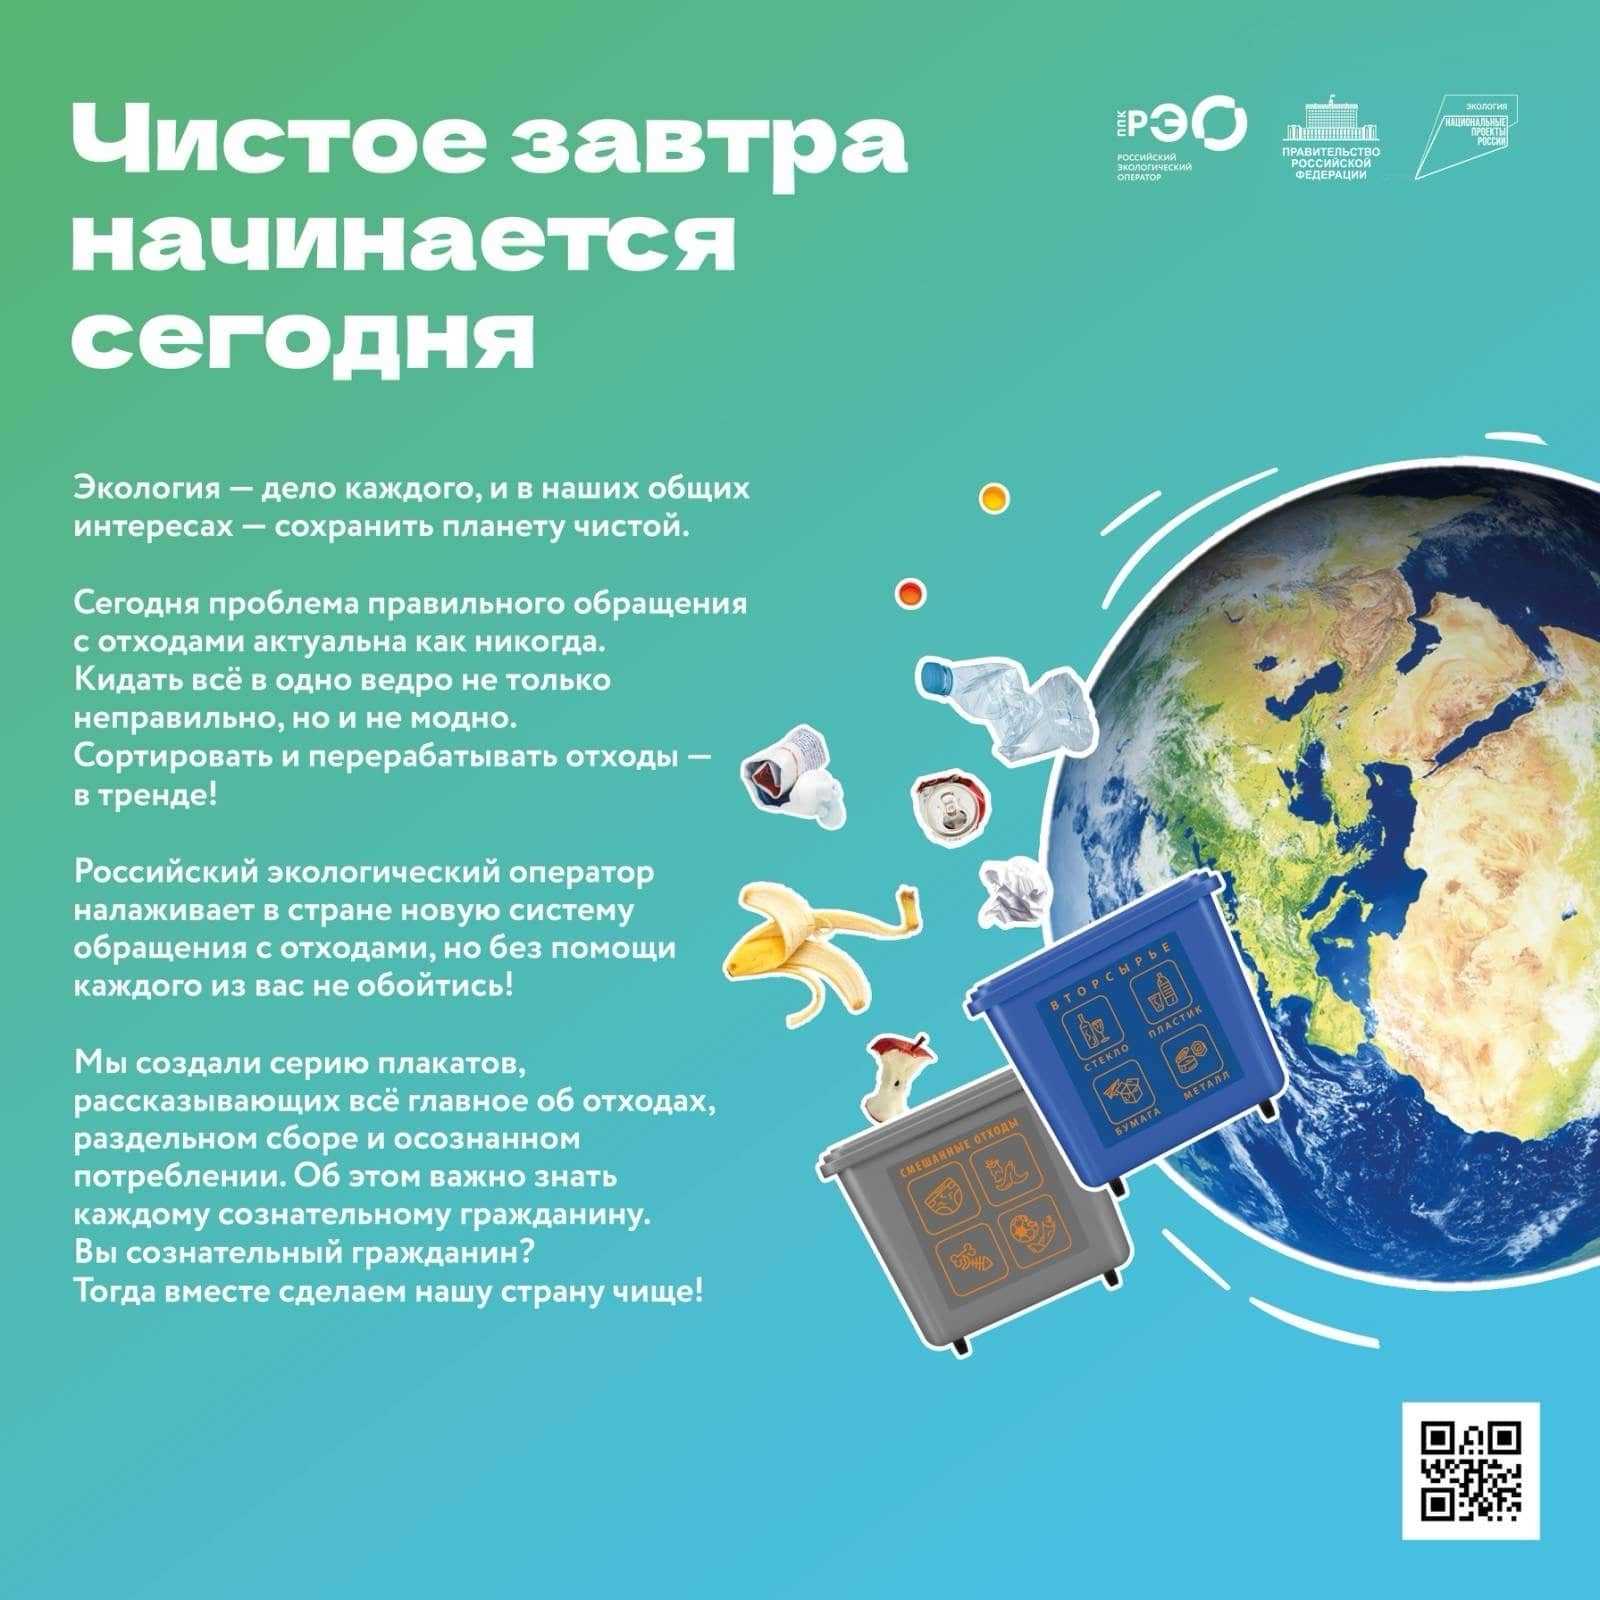 На сайте Российского экологического оператора появился новый раздел - Медиабанк